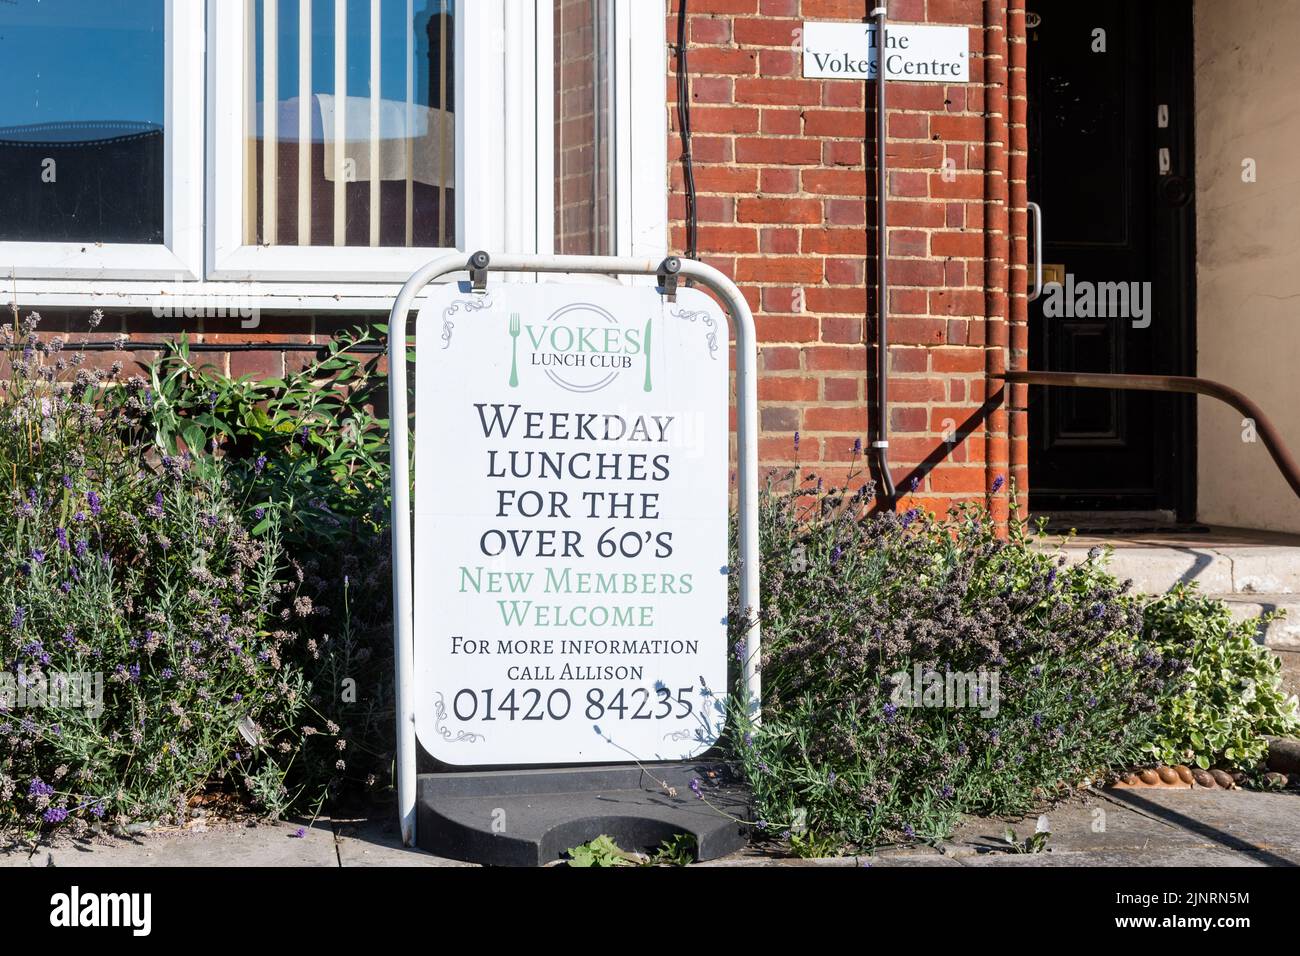 Firme anunciando un Club de Almuerzo, Comidas de día de semana para los mayores de 60, fuera del Centro de Vokes en Alton, Hampshire, Inglaterra, Reino Unido Foto de stock